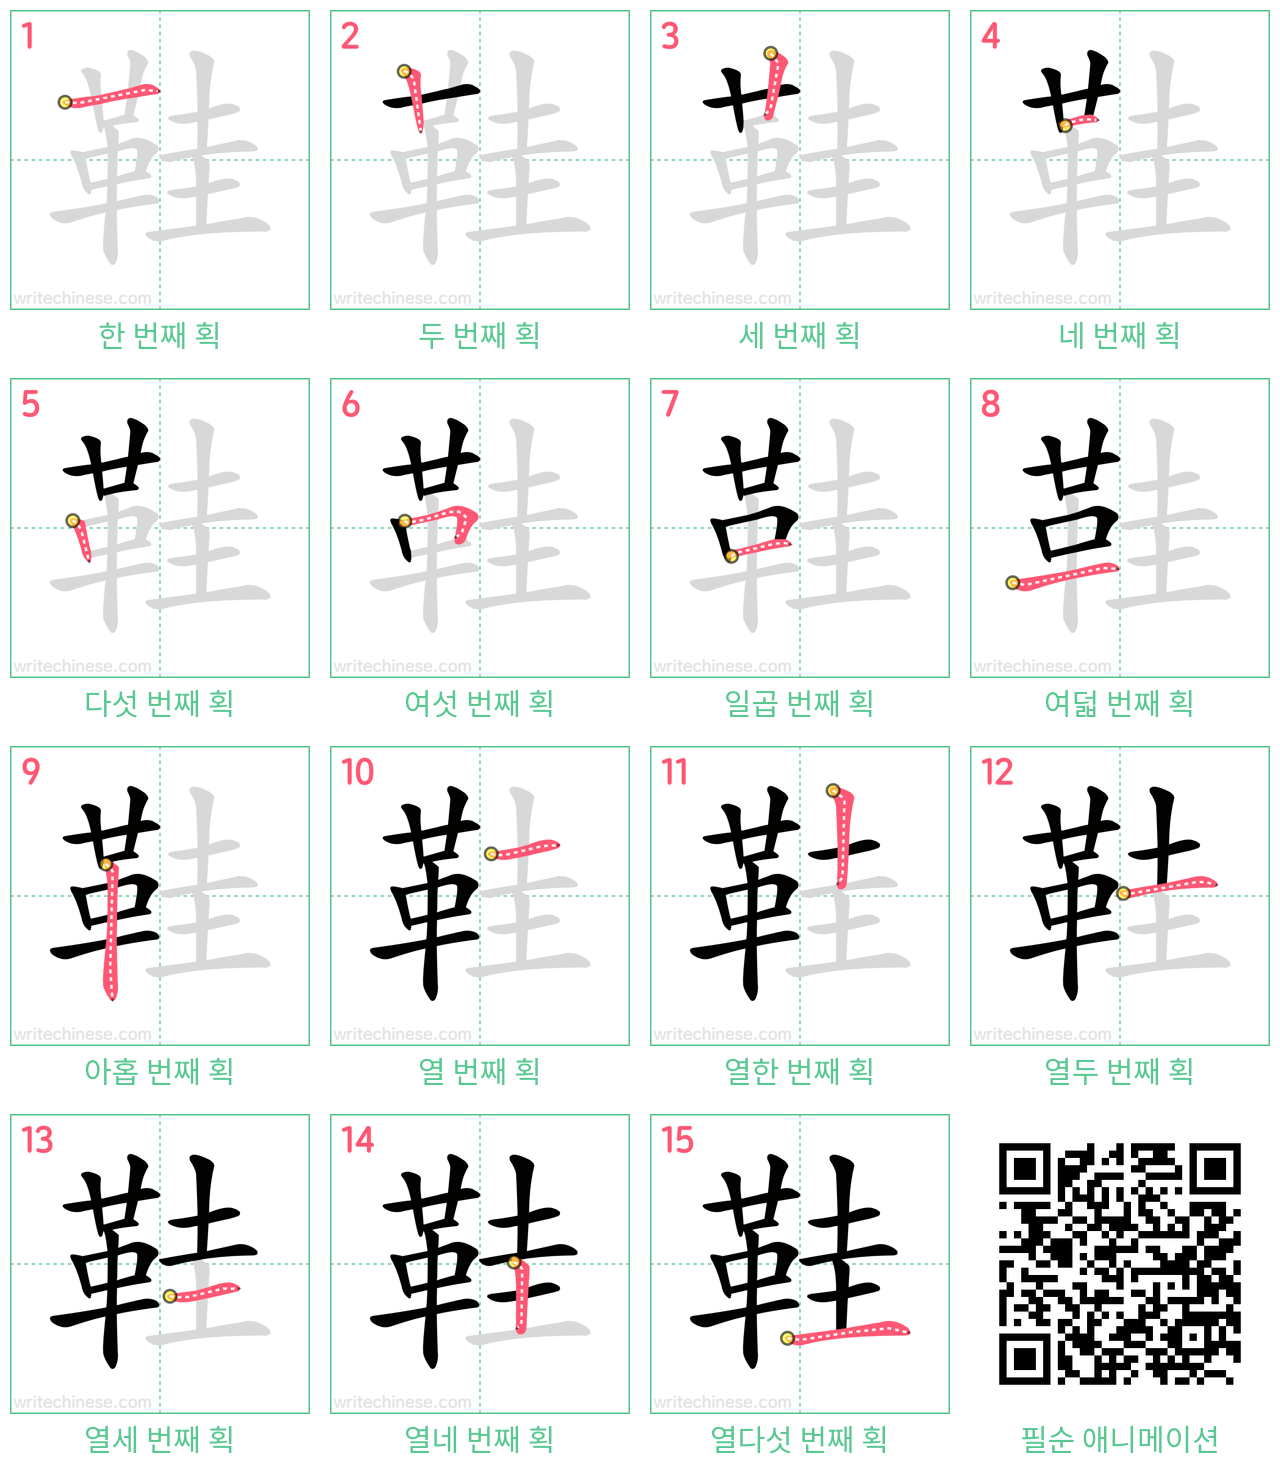 鞋 step-by-step stroke order diagrams